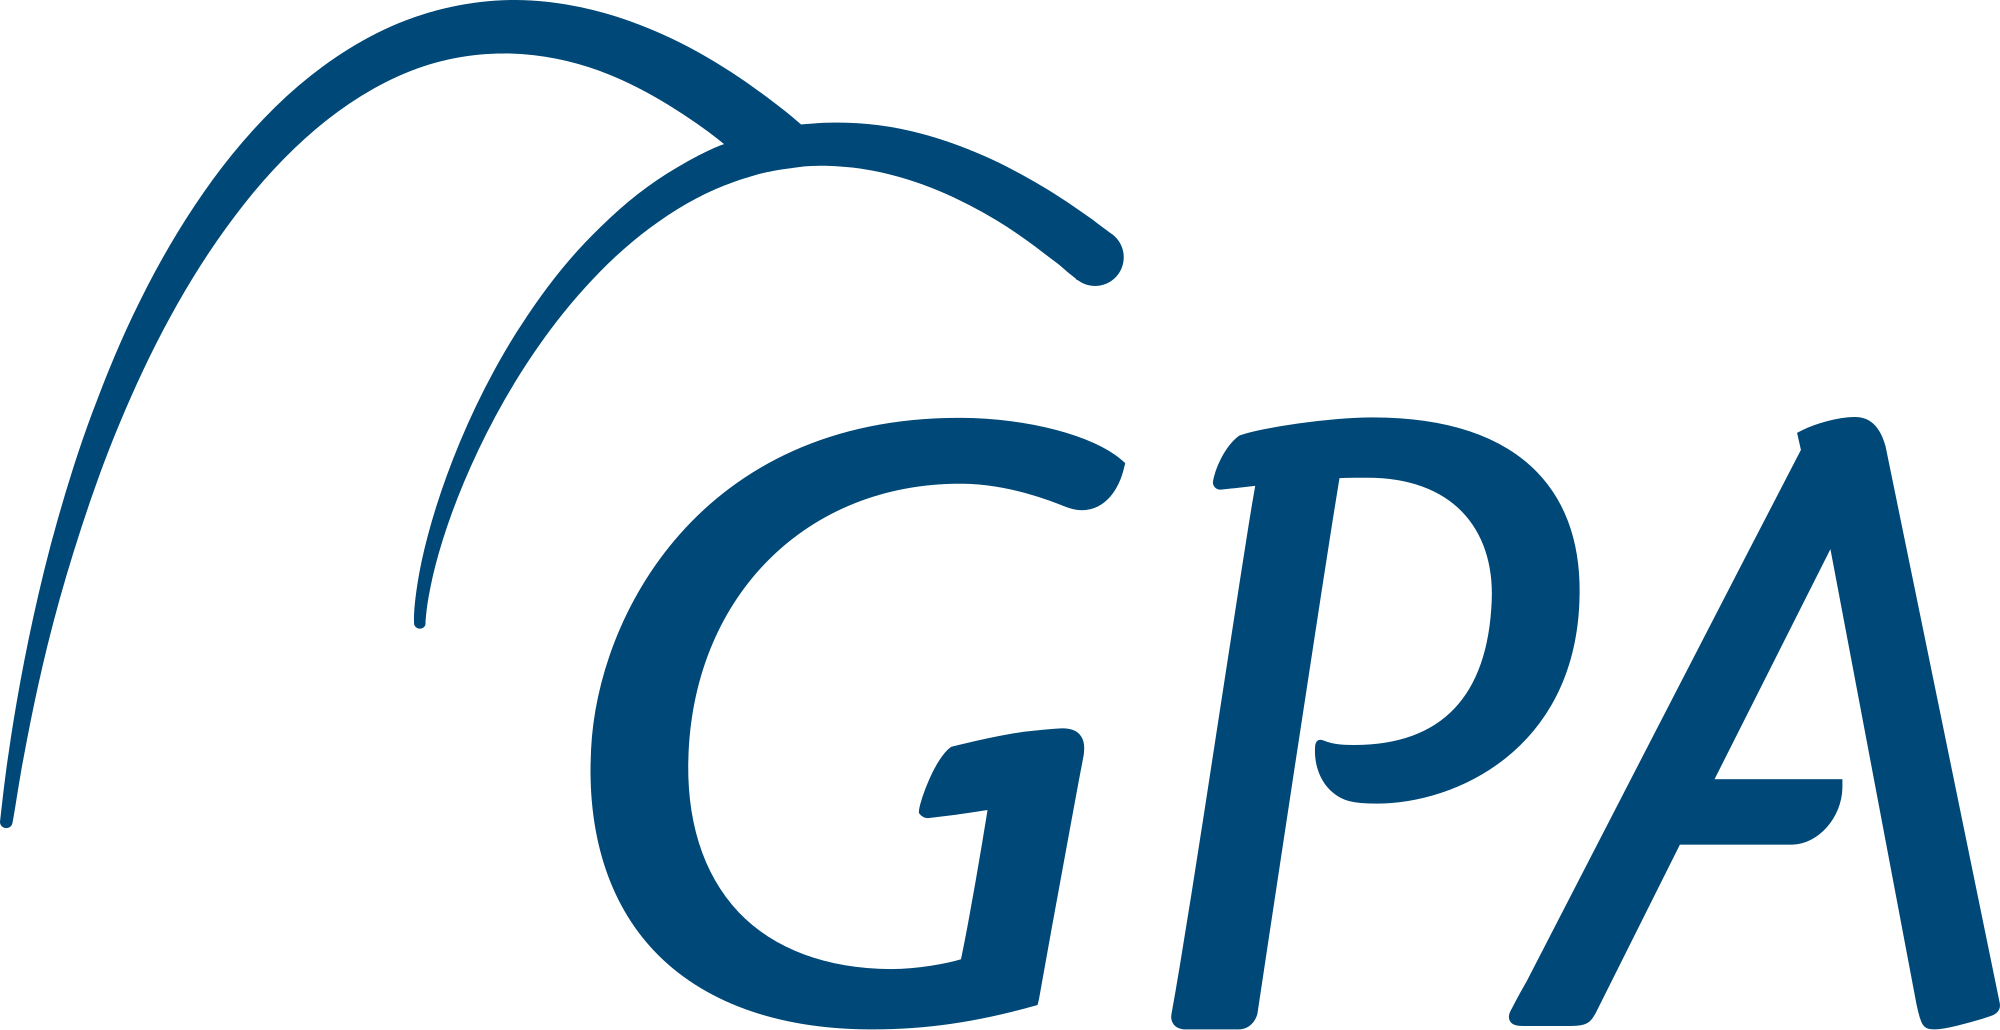 GPA là viết tắt của Grade Point Average, tức điểm trung bình